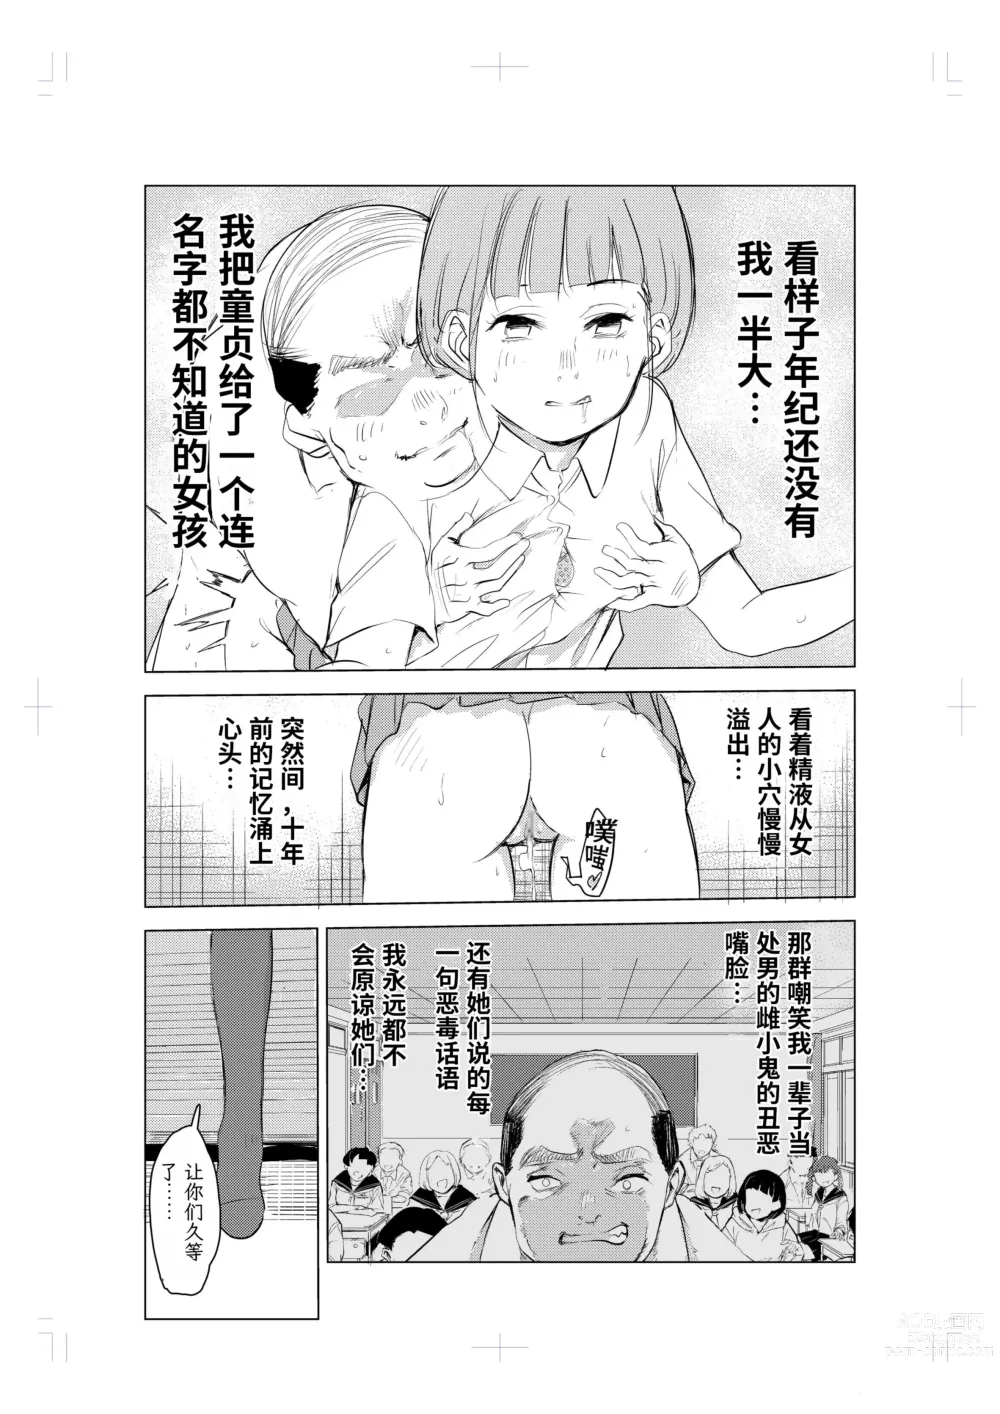 Page 11 of doujinshi 40-sai no Mahoutukai